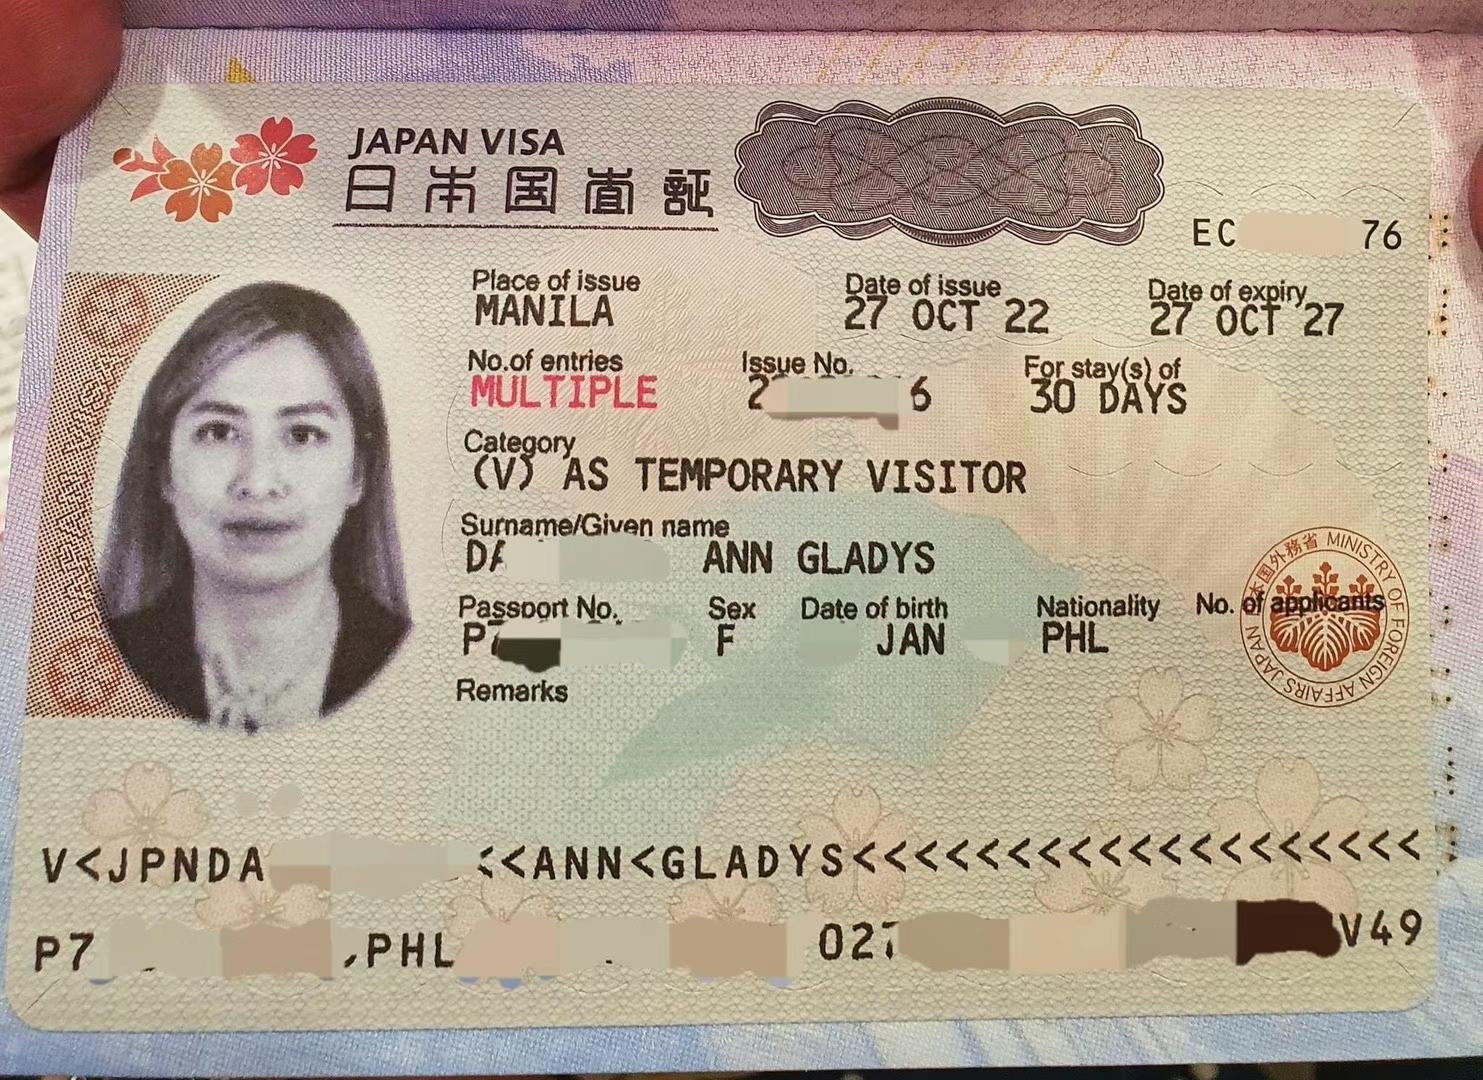 没有菲律宾长期签证可以申请日本签证吗？